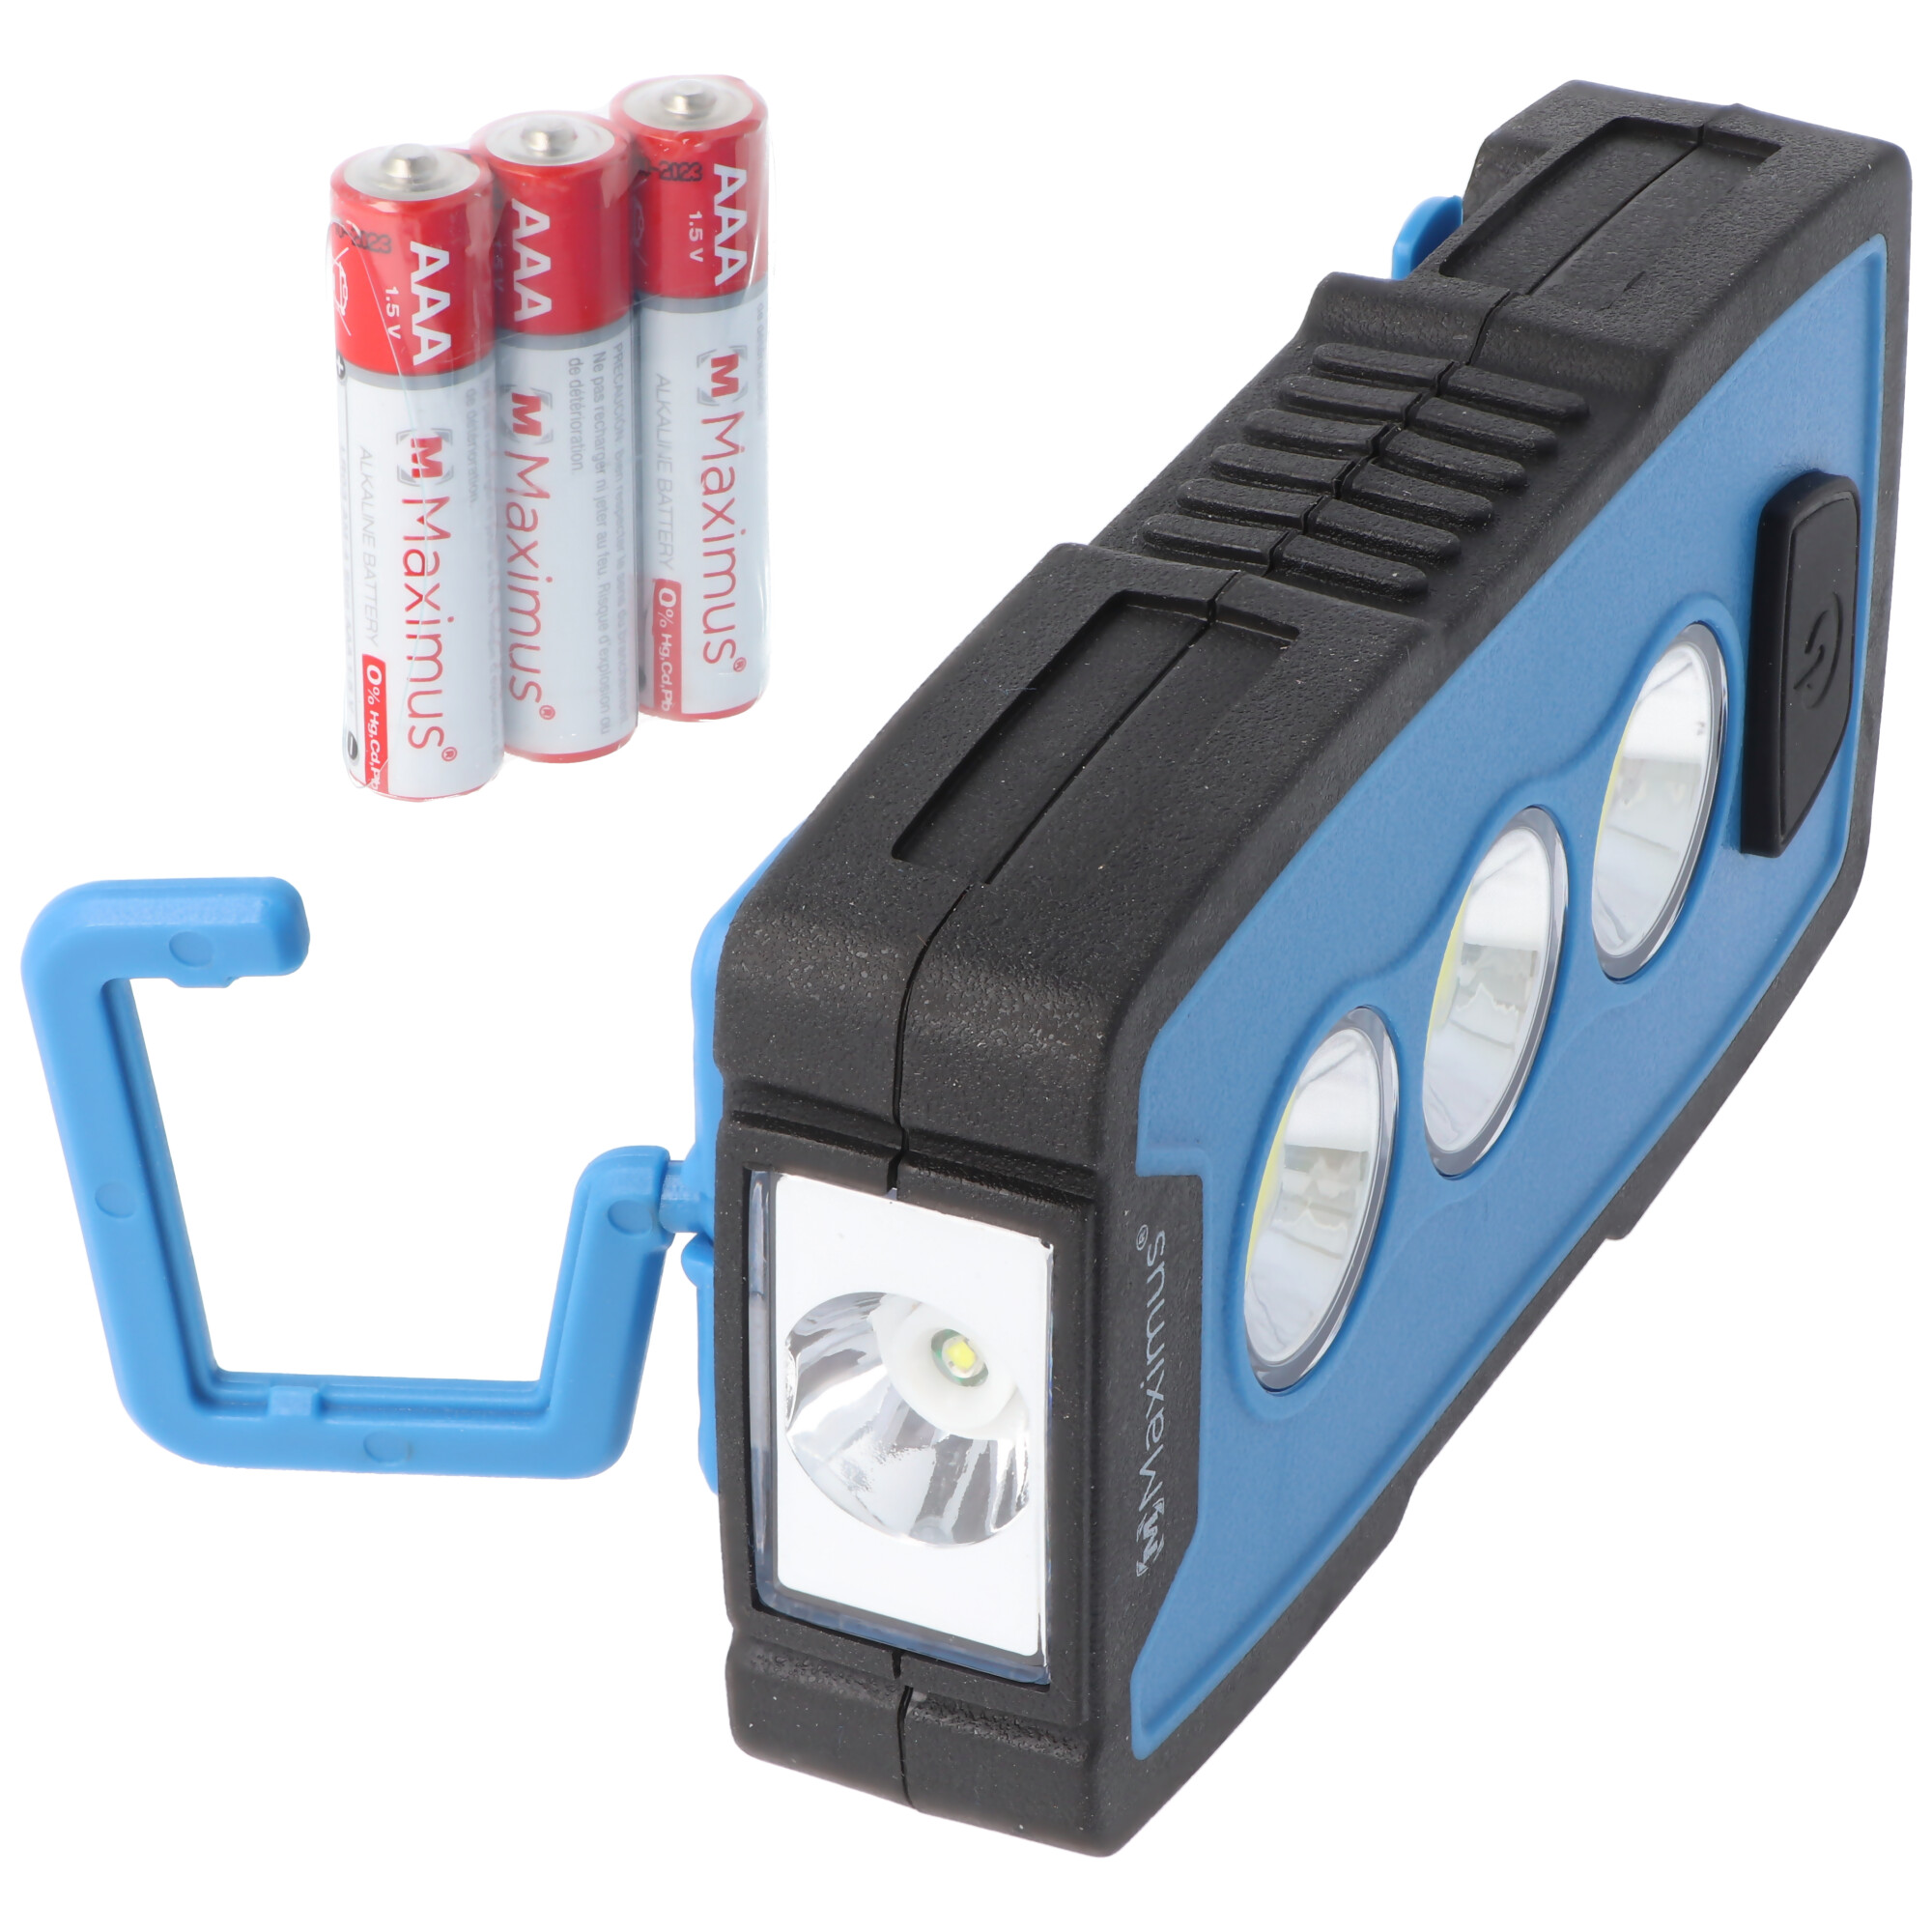 3 Watt LED Arbeitsleuchte M-WKL-006BBL, Multifunktionslampe, Taschenlampe, 230 Lumen, mit Haken, Magnet und Gürtelclip, inklusive 3x AAA Batterien